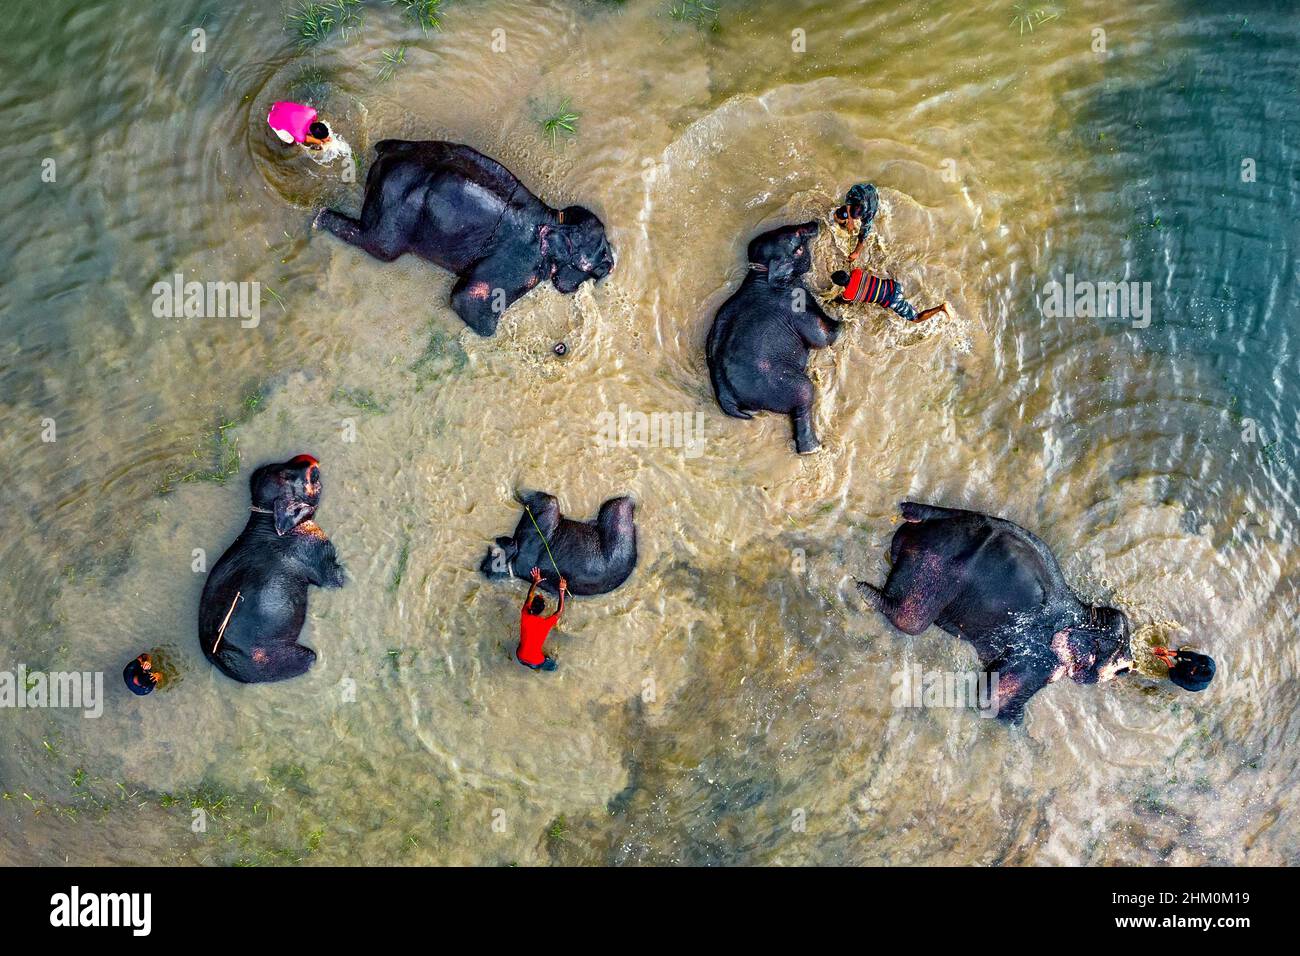 Zirkuselefanten baden im trüben Flusswasser Stockfoto